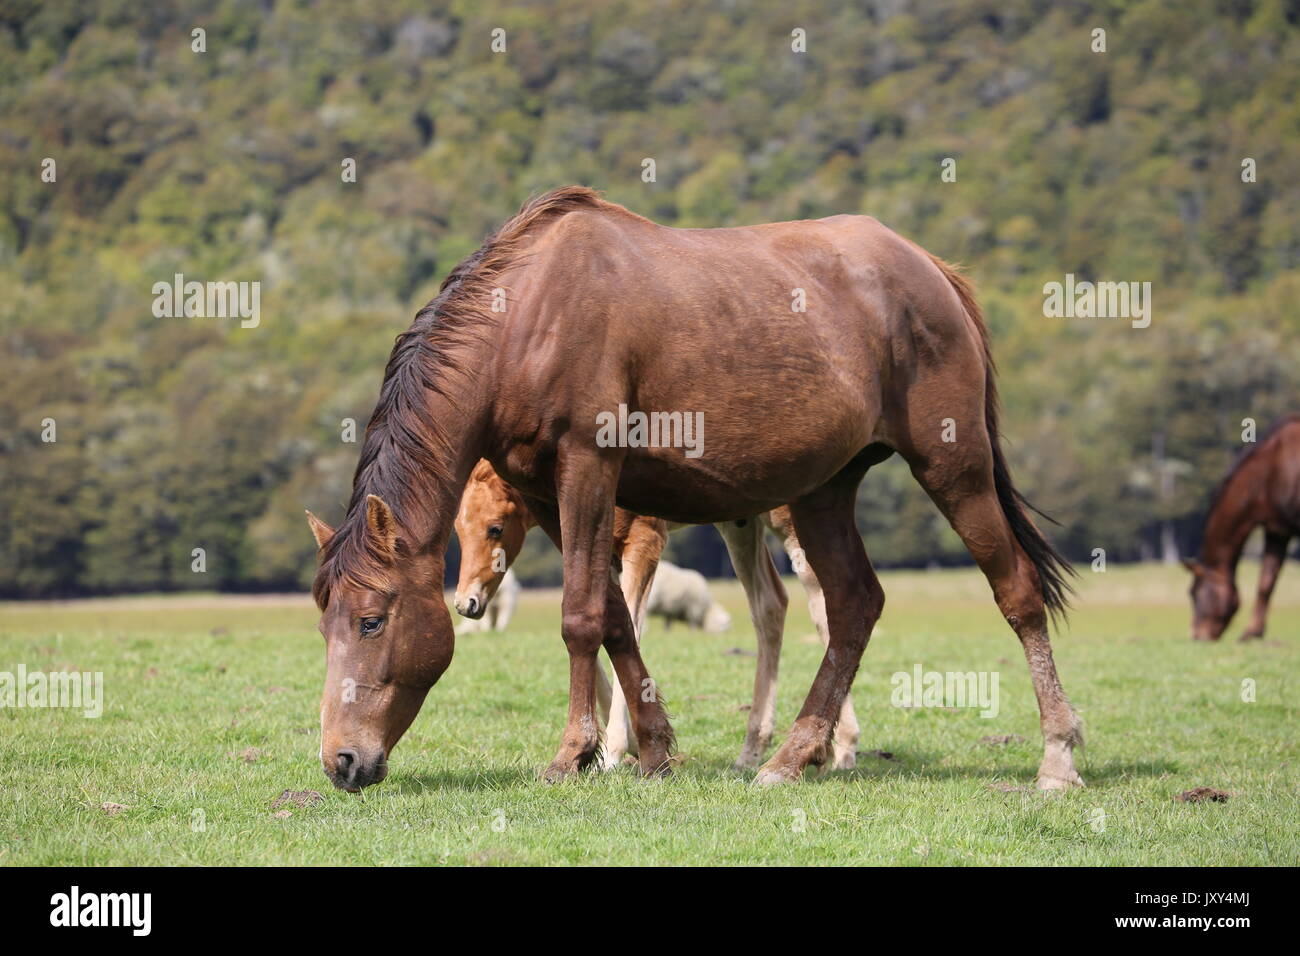 Horses grazing Stock Photo